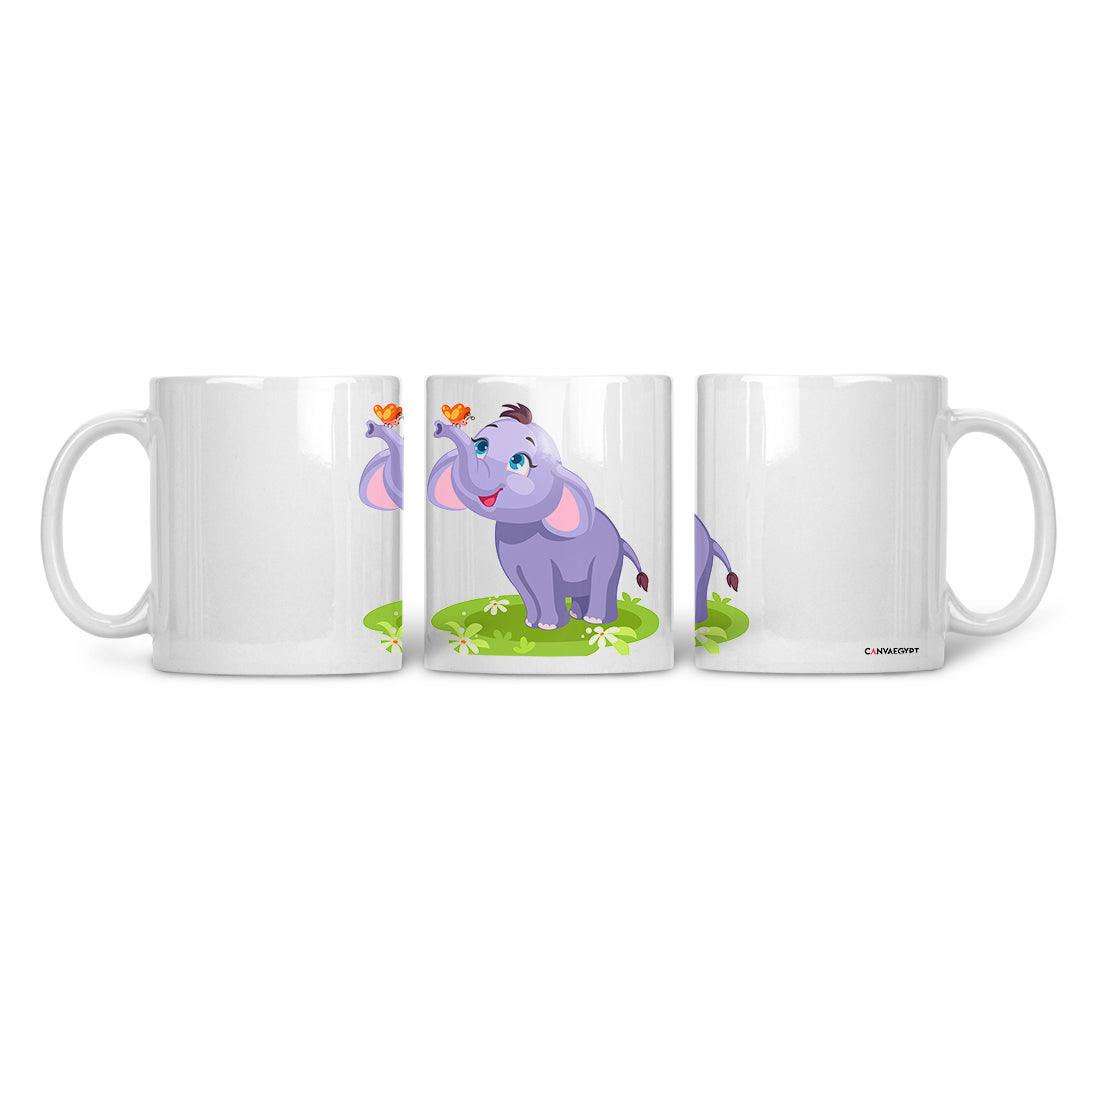 Ceramic Mug Happy elephant - CANVAEGYPT